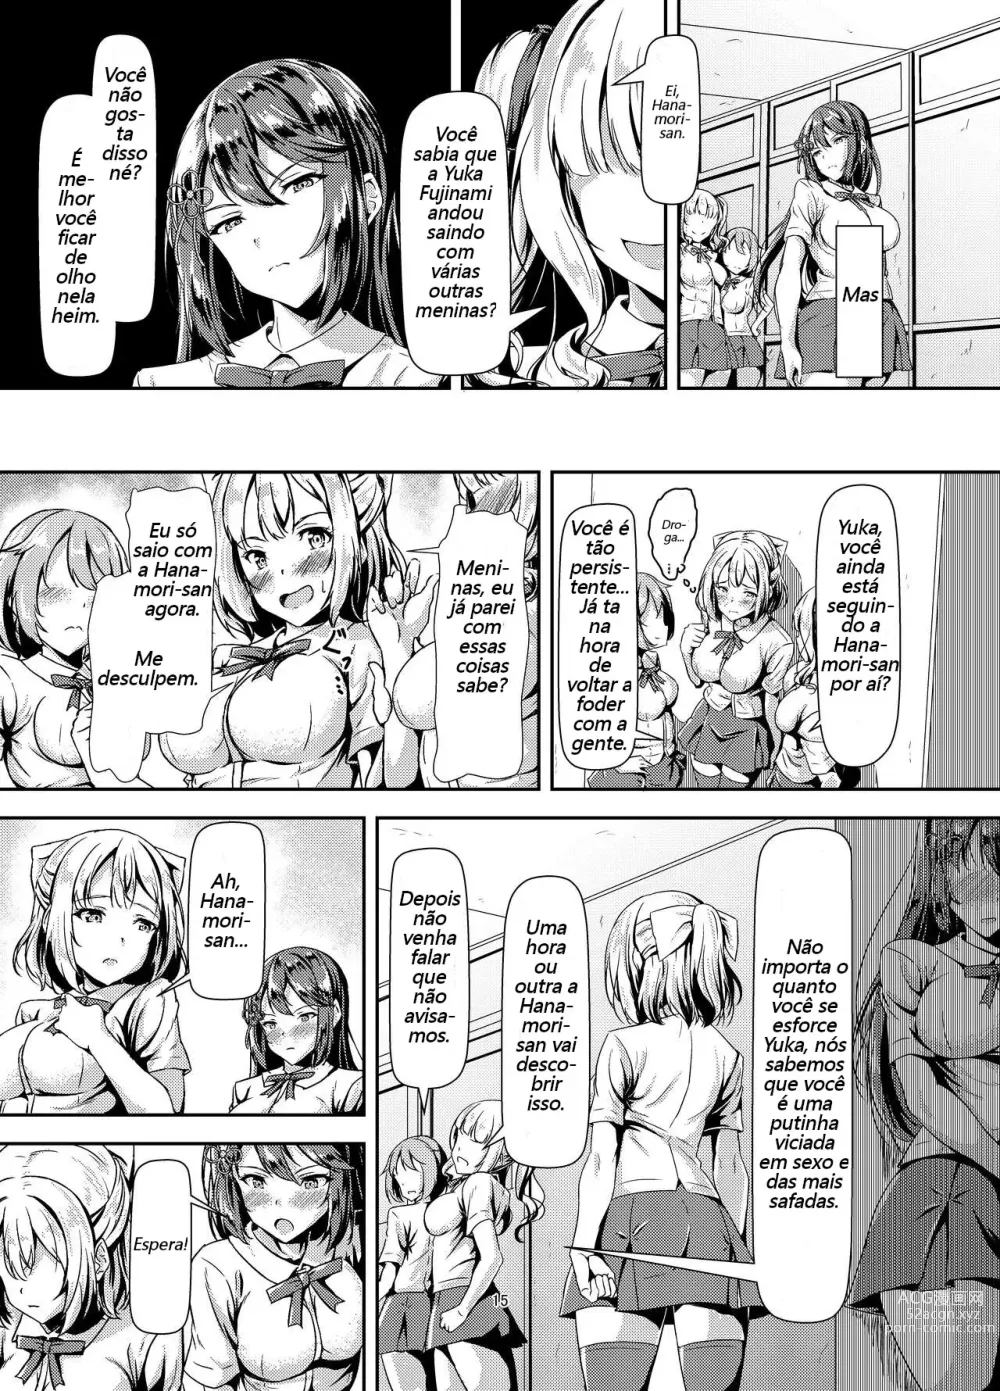 Page 14 of doujinshi Quero ter sexo de amor puro com uma Futanari morena de cabelos compridos!